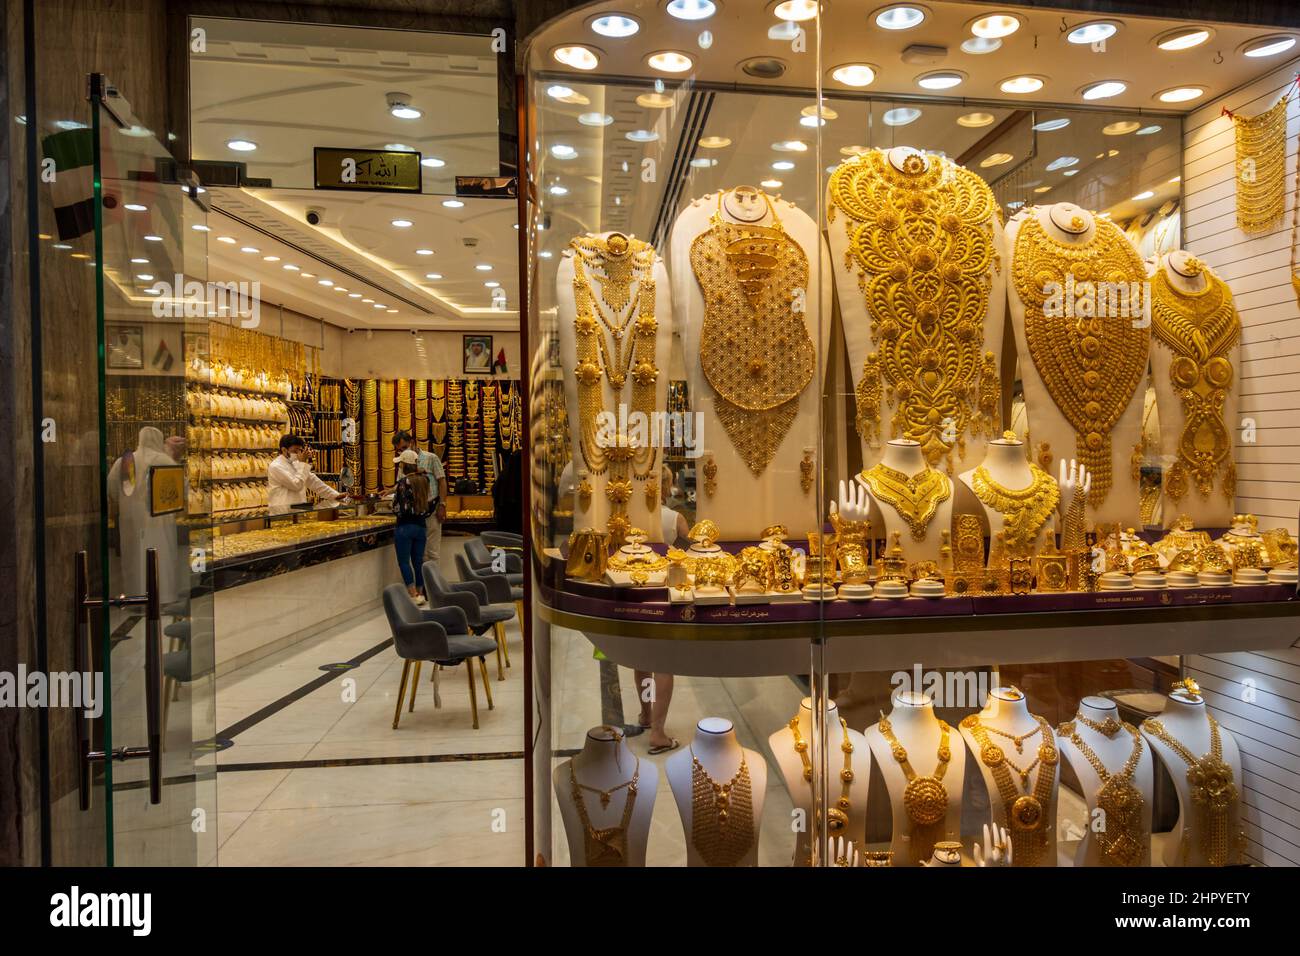 Schaufenster im Dubai Gold Souk im Viertel Deira. Eines der beliebtesten Einkaufsziele und Goldmärkte in Dubai. Stockfoto